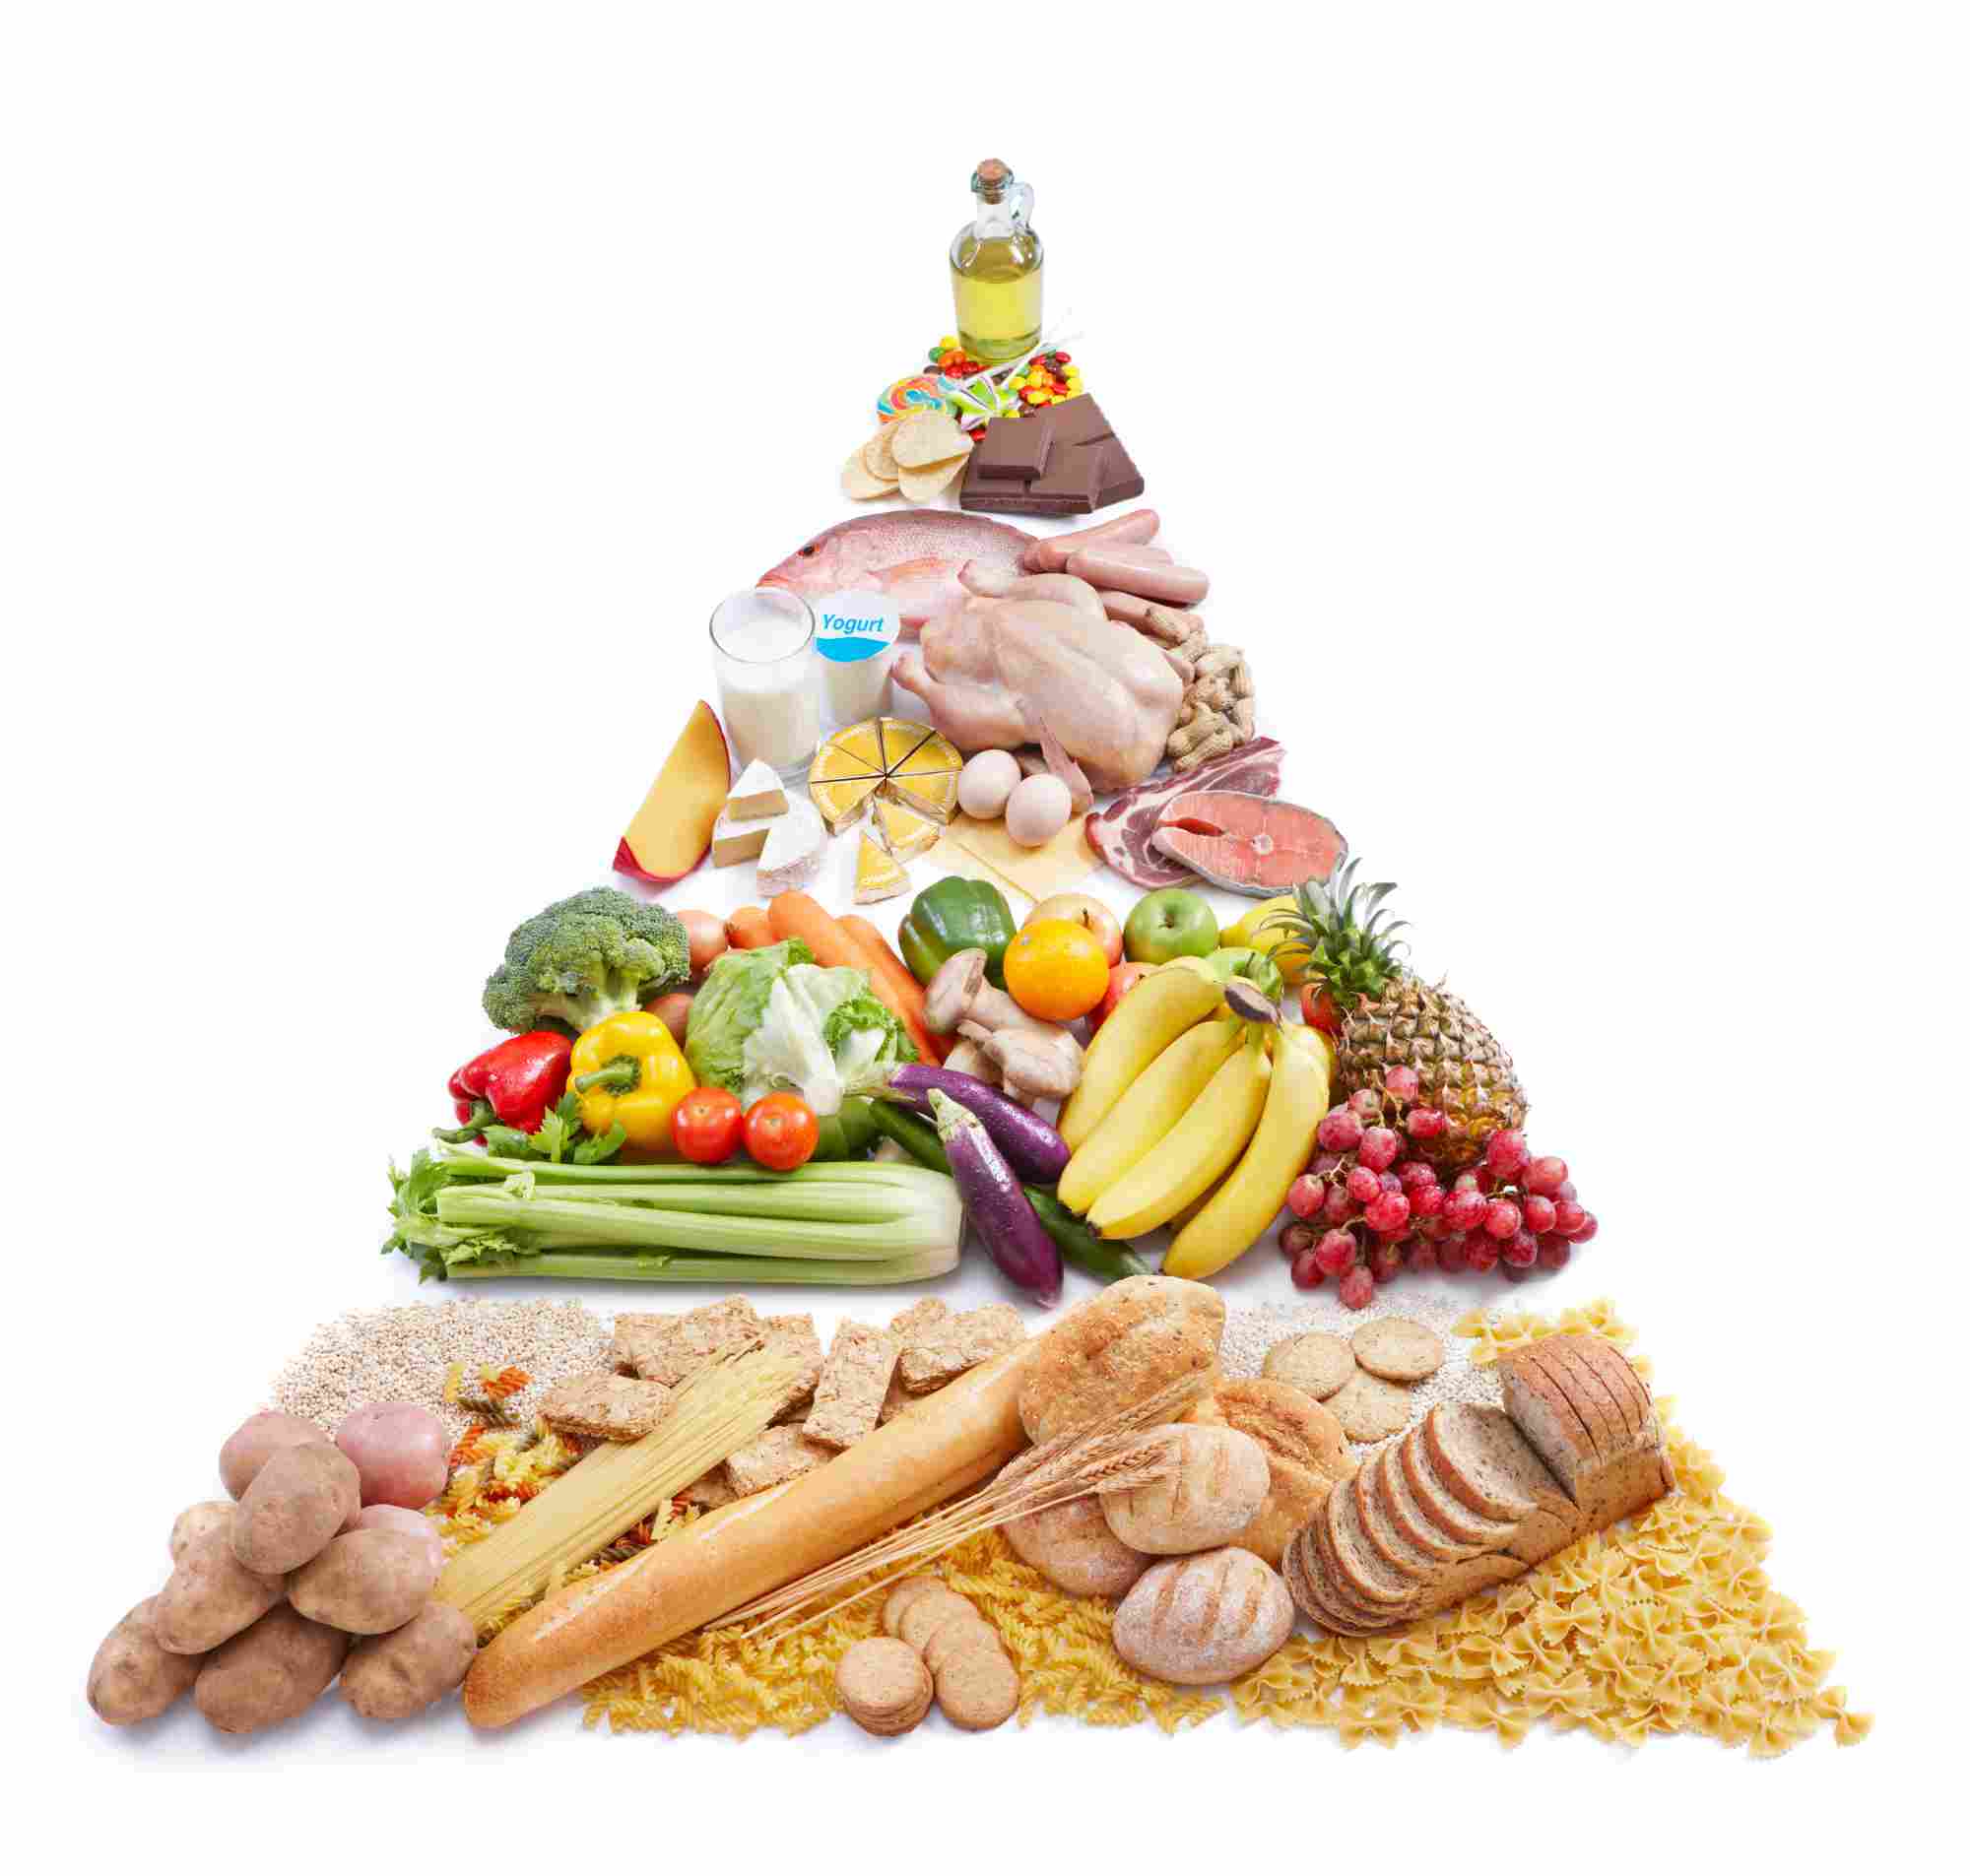 Съестные продукты. Пирамида питания здорового человека. Кето пирамида питания. Рациональное питание. Сбалансированное питание.